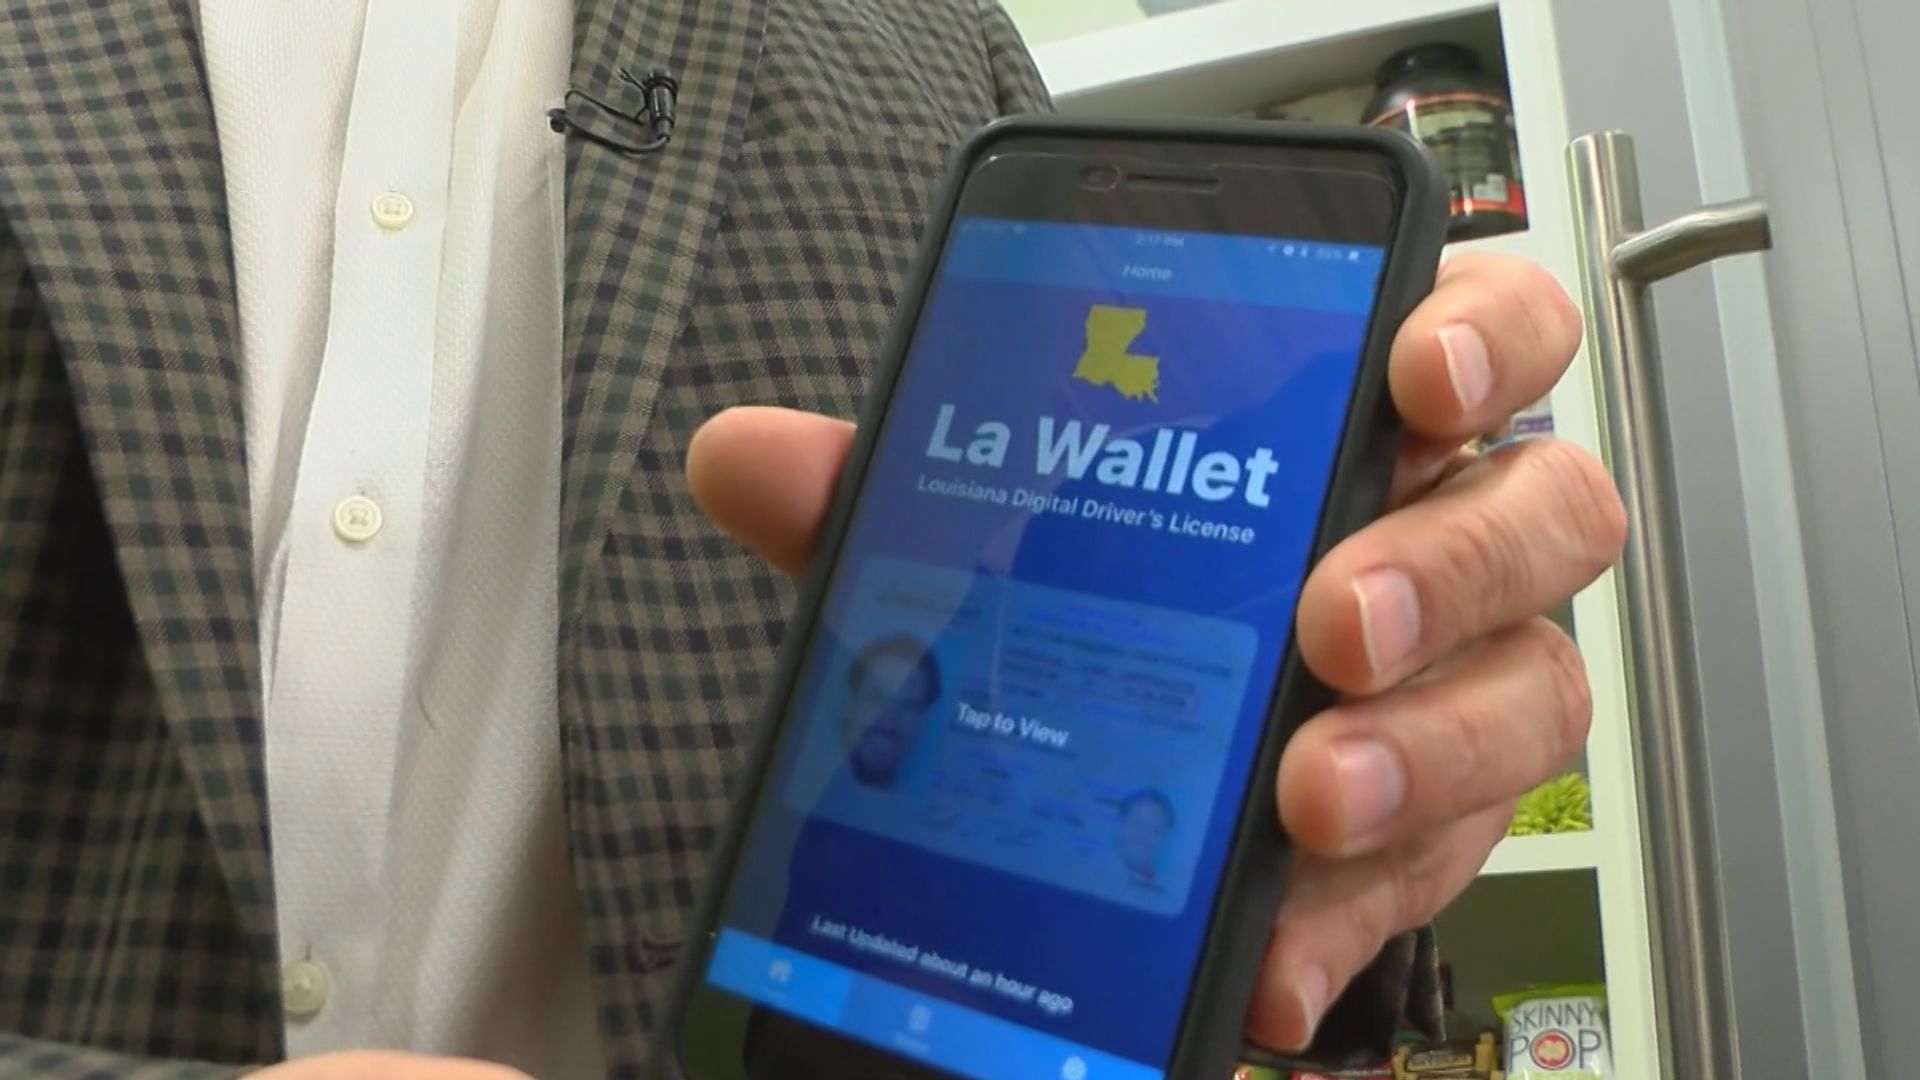 LA Wallet on the App Store